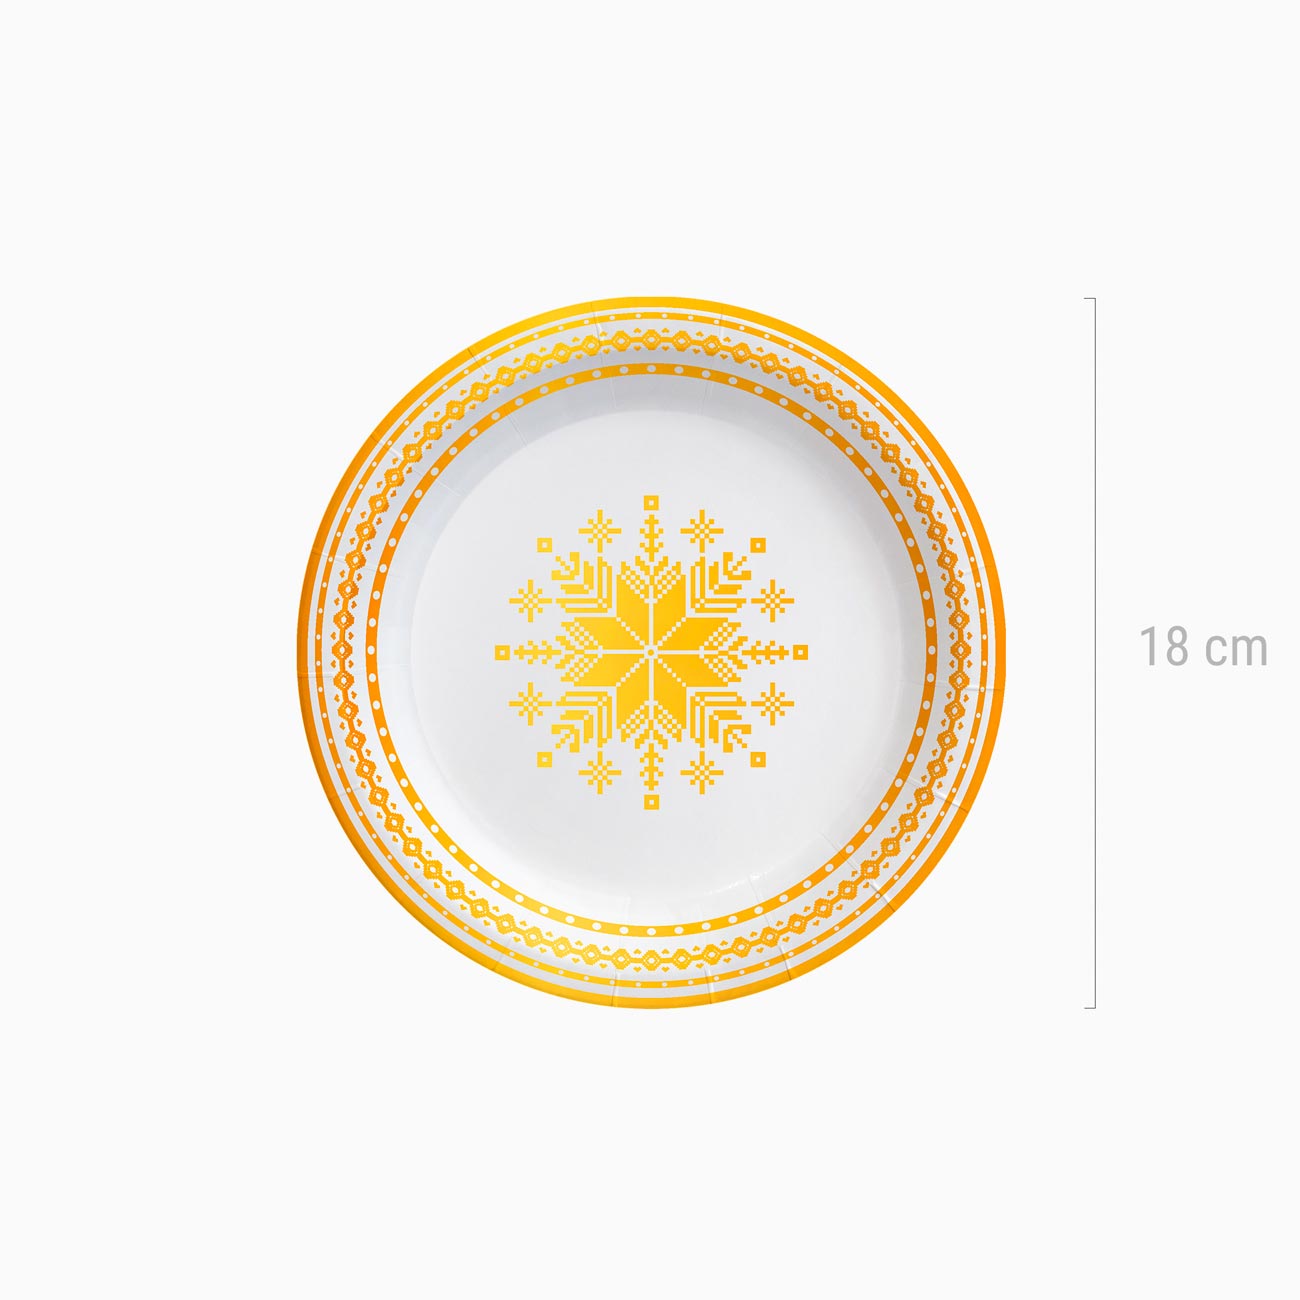 Papelão llano para sobremesa de natal Ø 18 cm de bordado de ouro